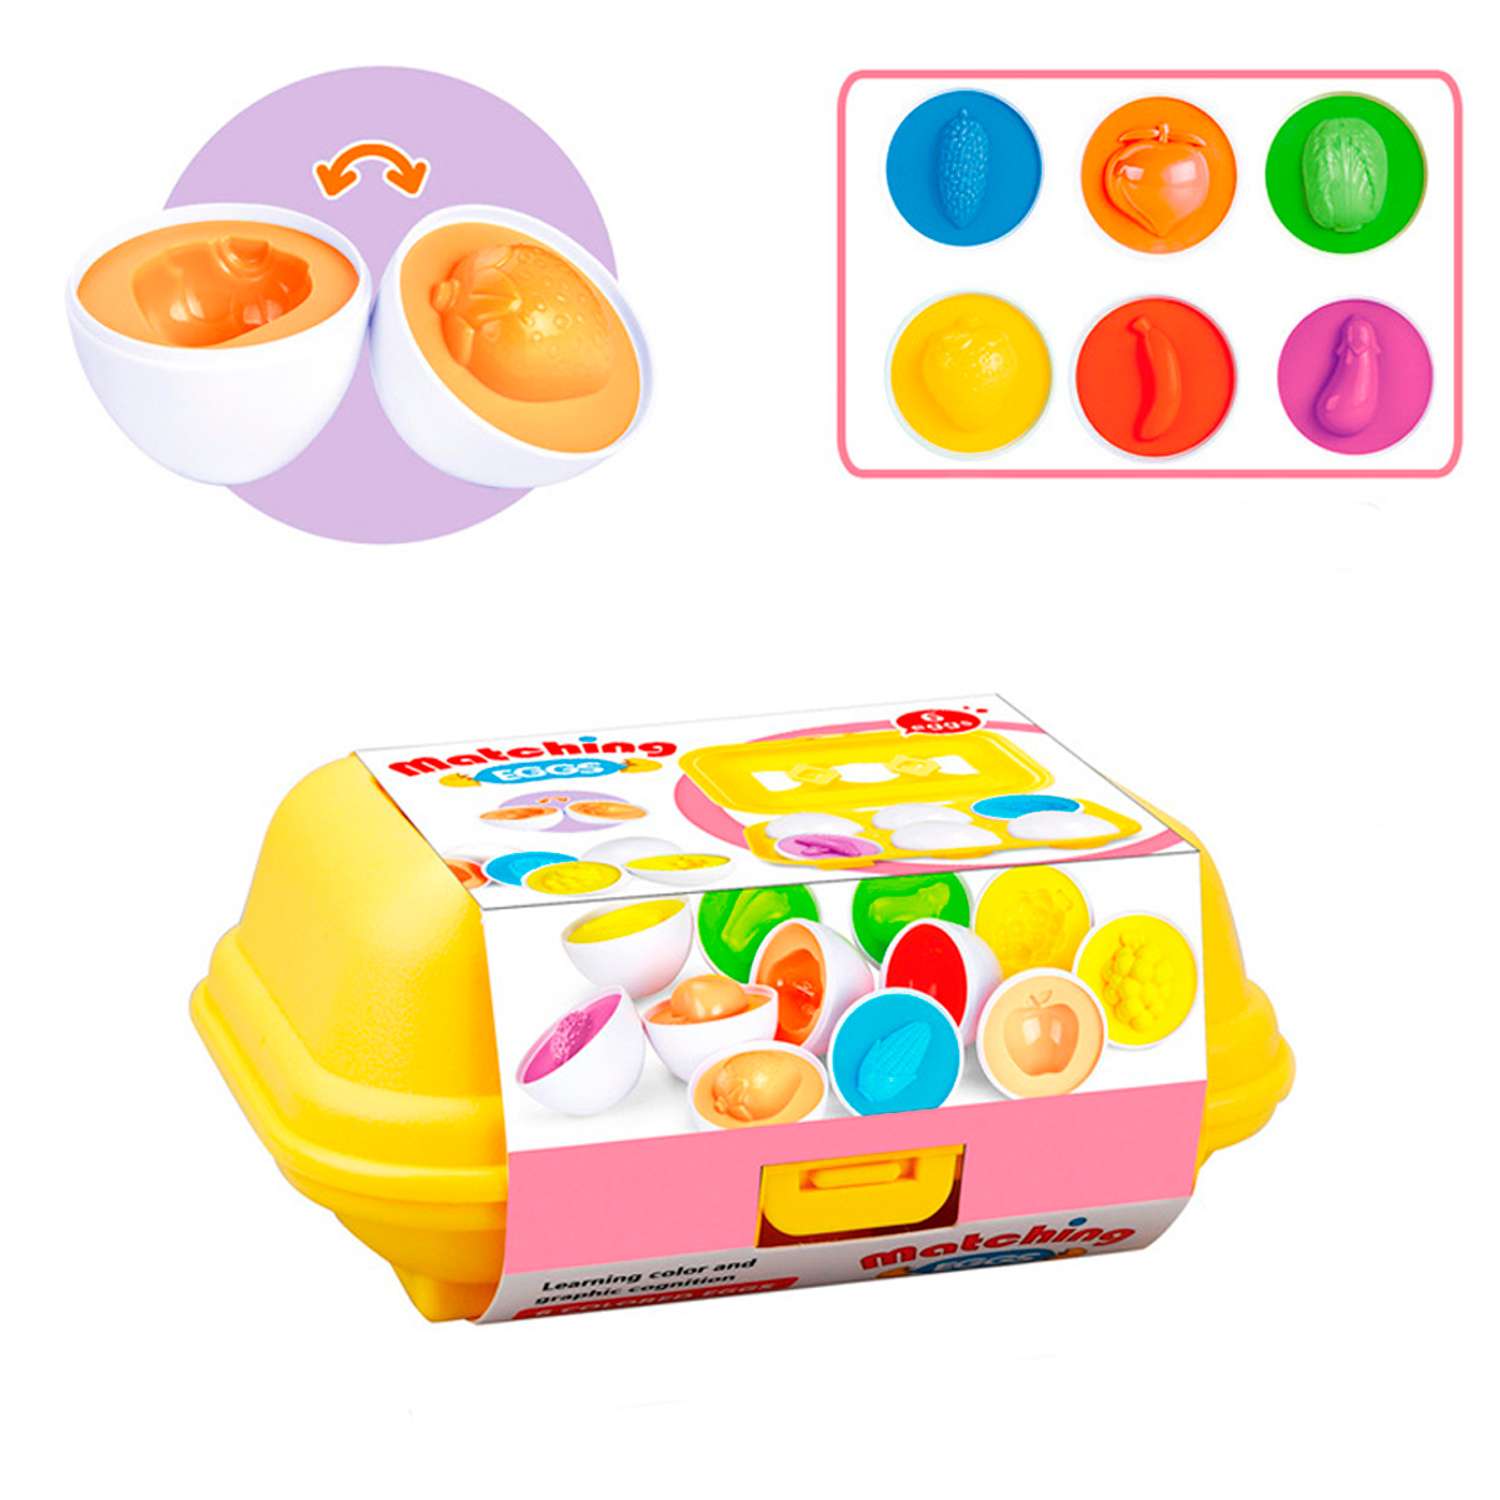 Сортер яйца в контейнере S+S развивающая игрушка для малышей - фото 1